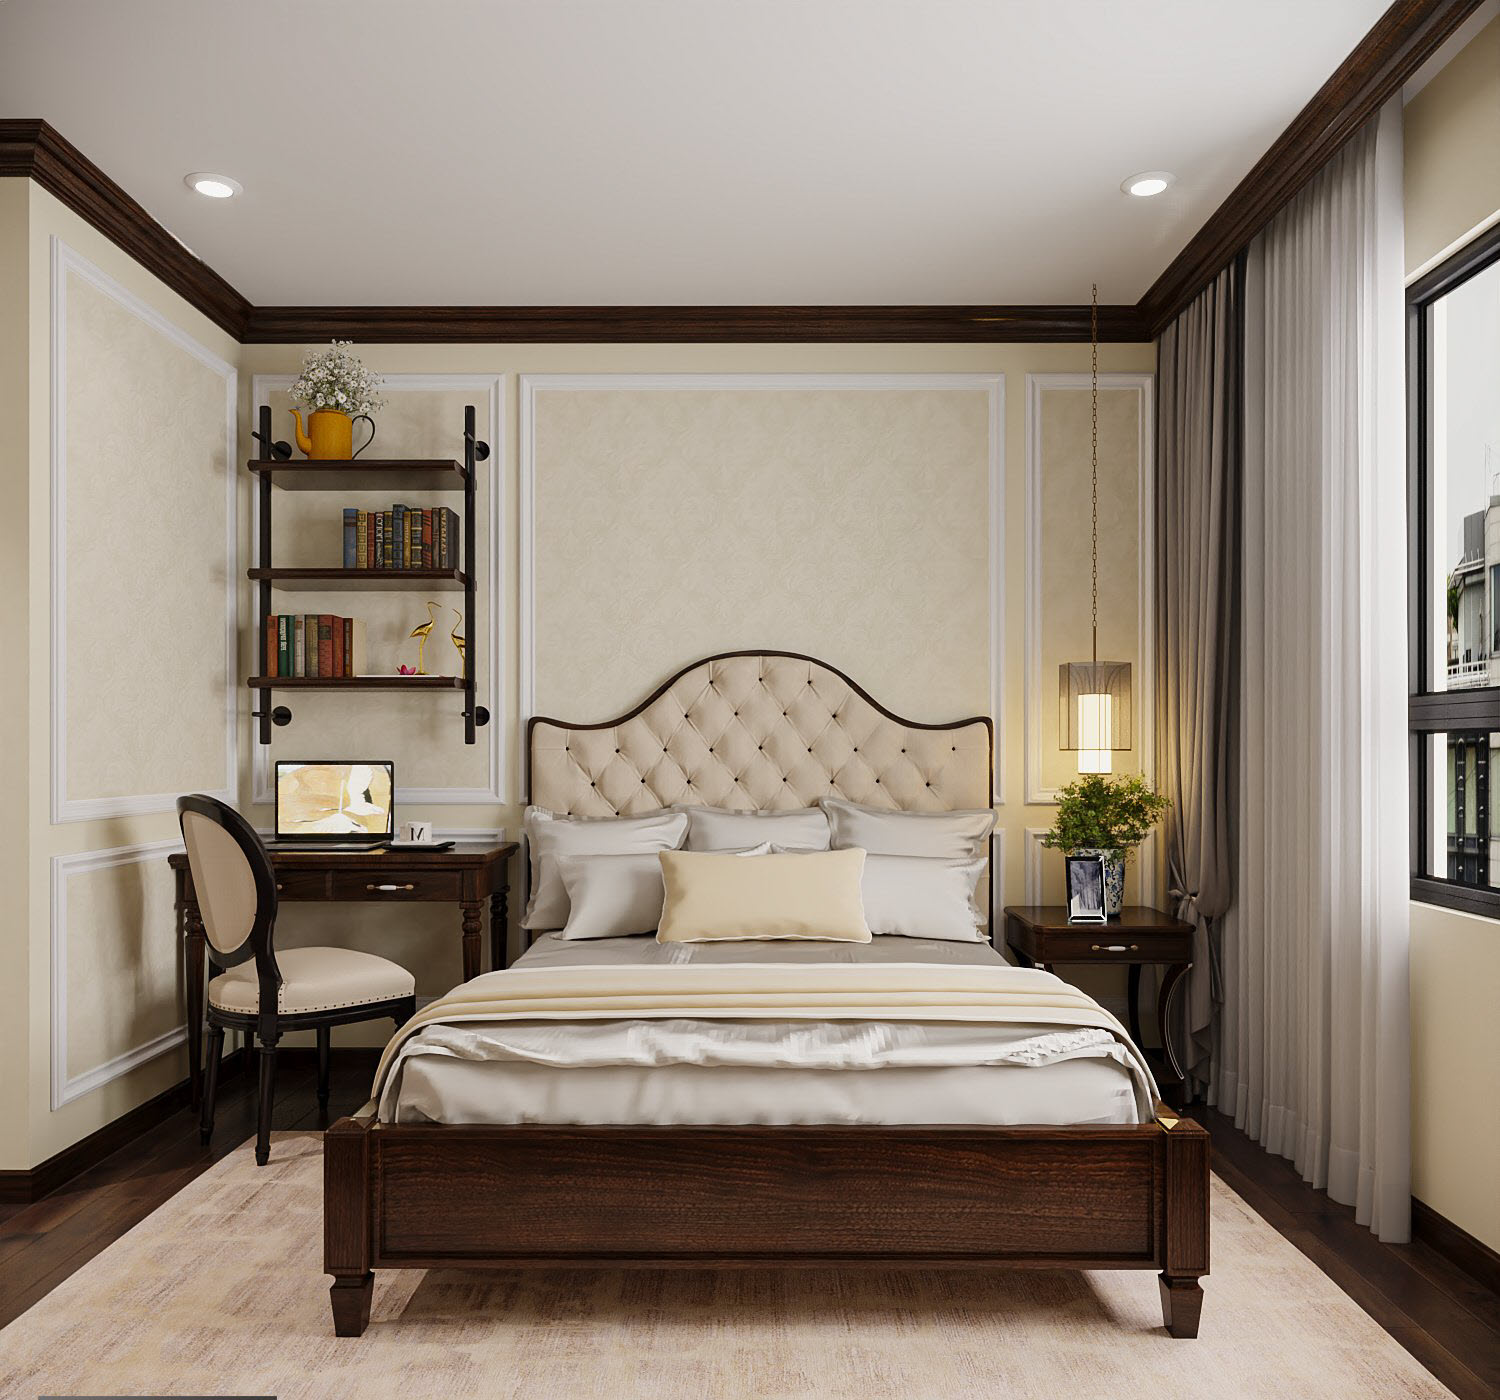 Phòng ngủ thứ hai nhỏ hơn với thiết kế nội thất tương tự, tích hợp góc làm việc tiện dụng.